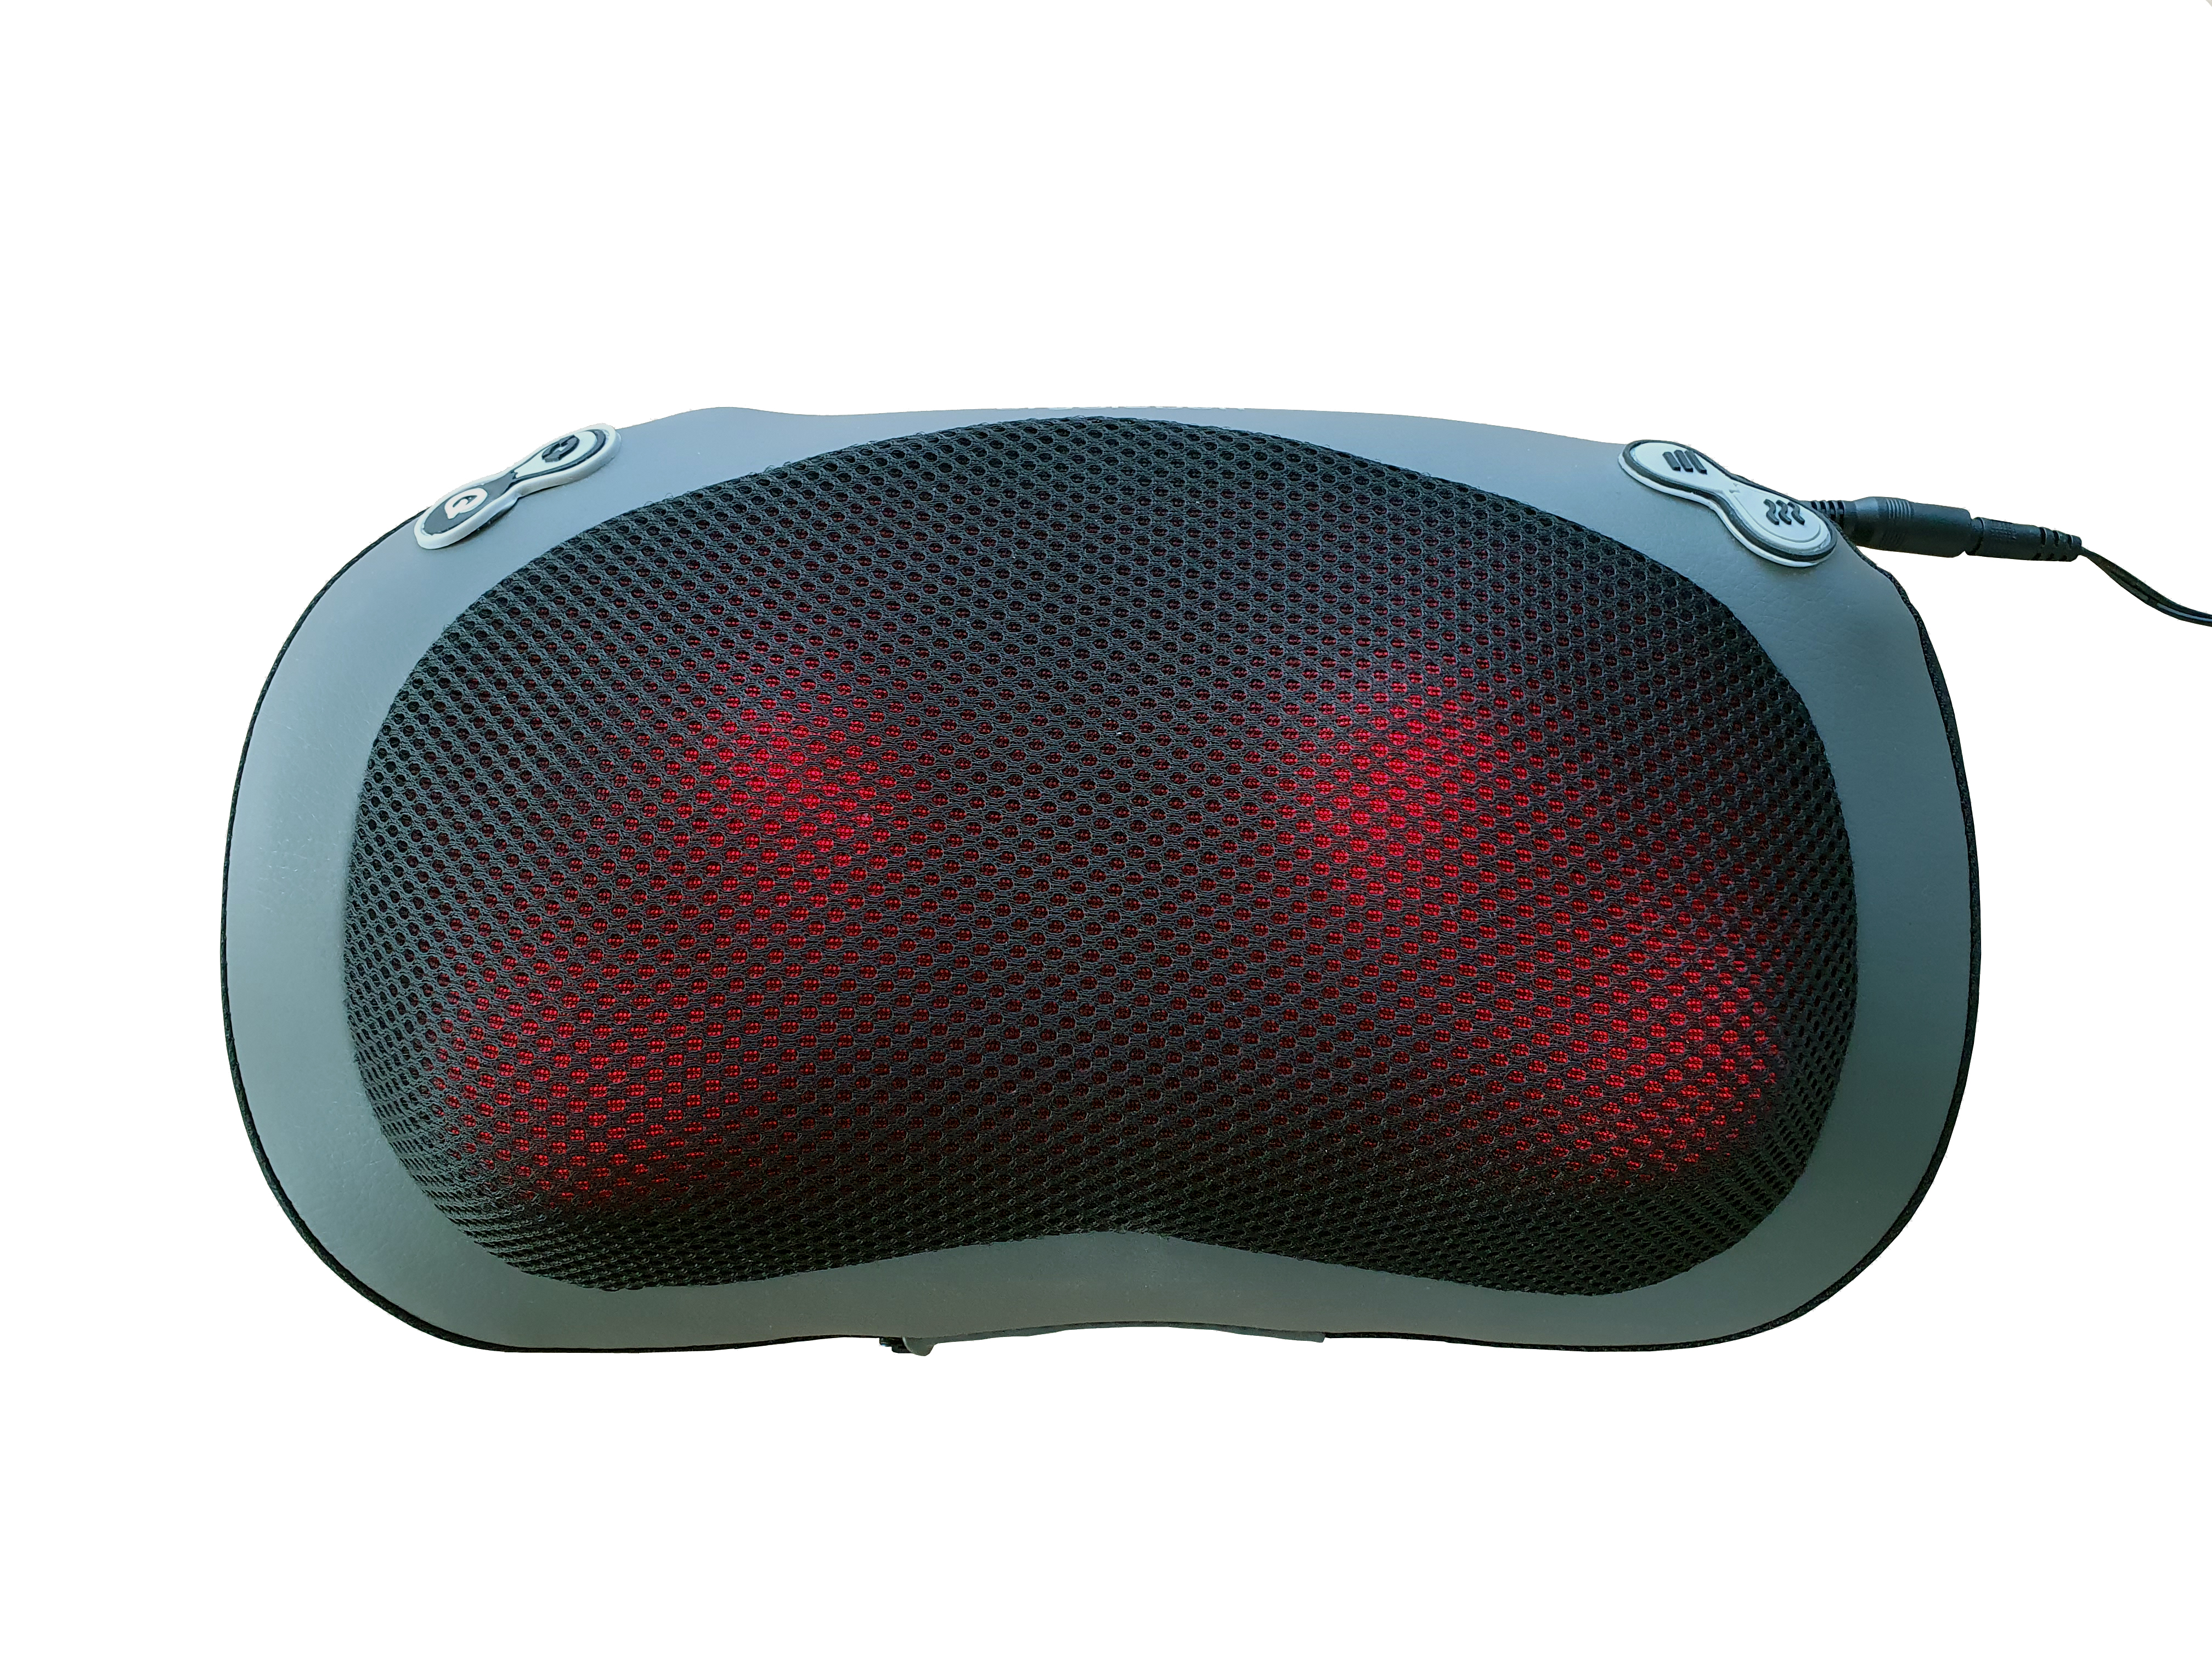 Funktion und Shiatsu Nacken 3D Massagekissen Massagegerät Rücken Auto ERGOLEBEN inklusive Adapter mit für Wärme